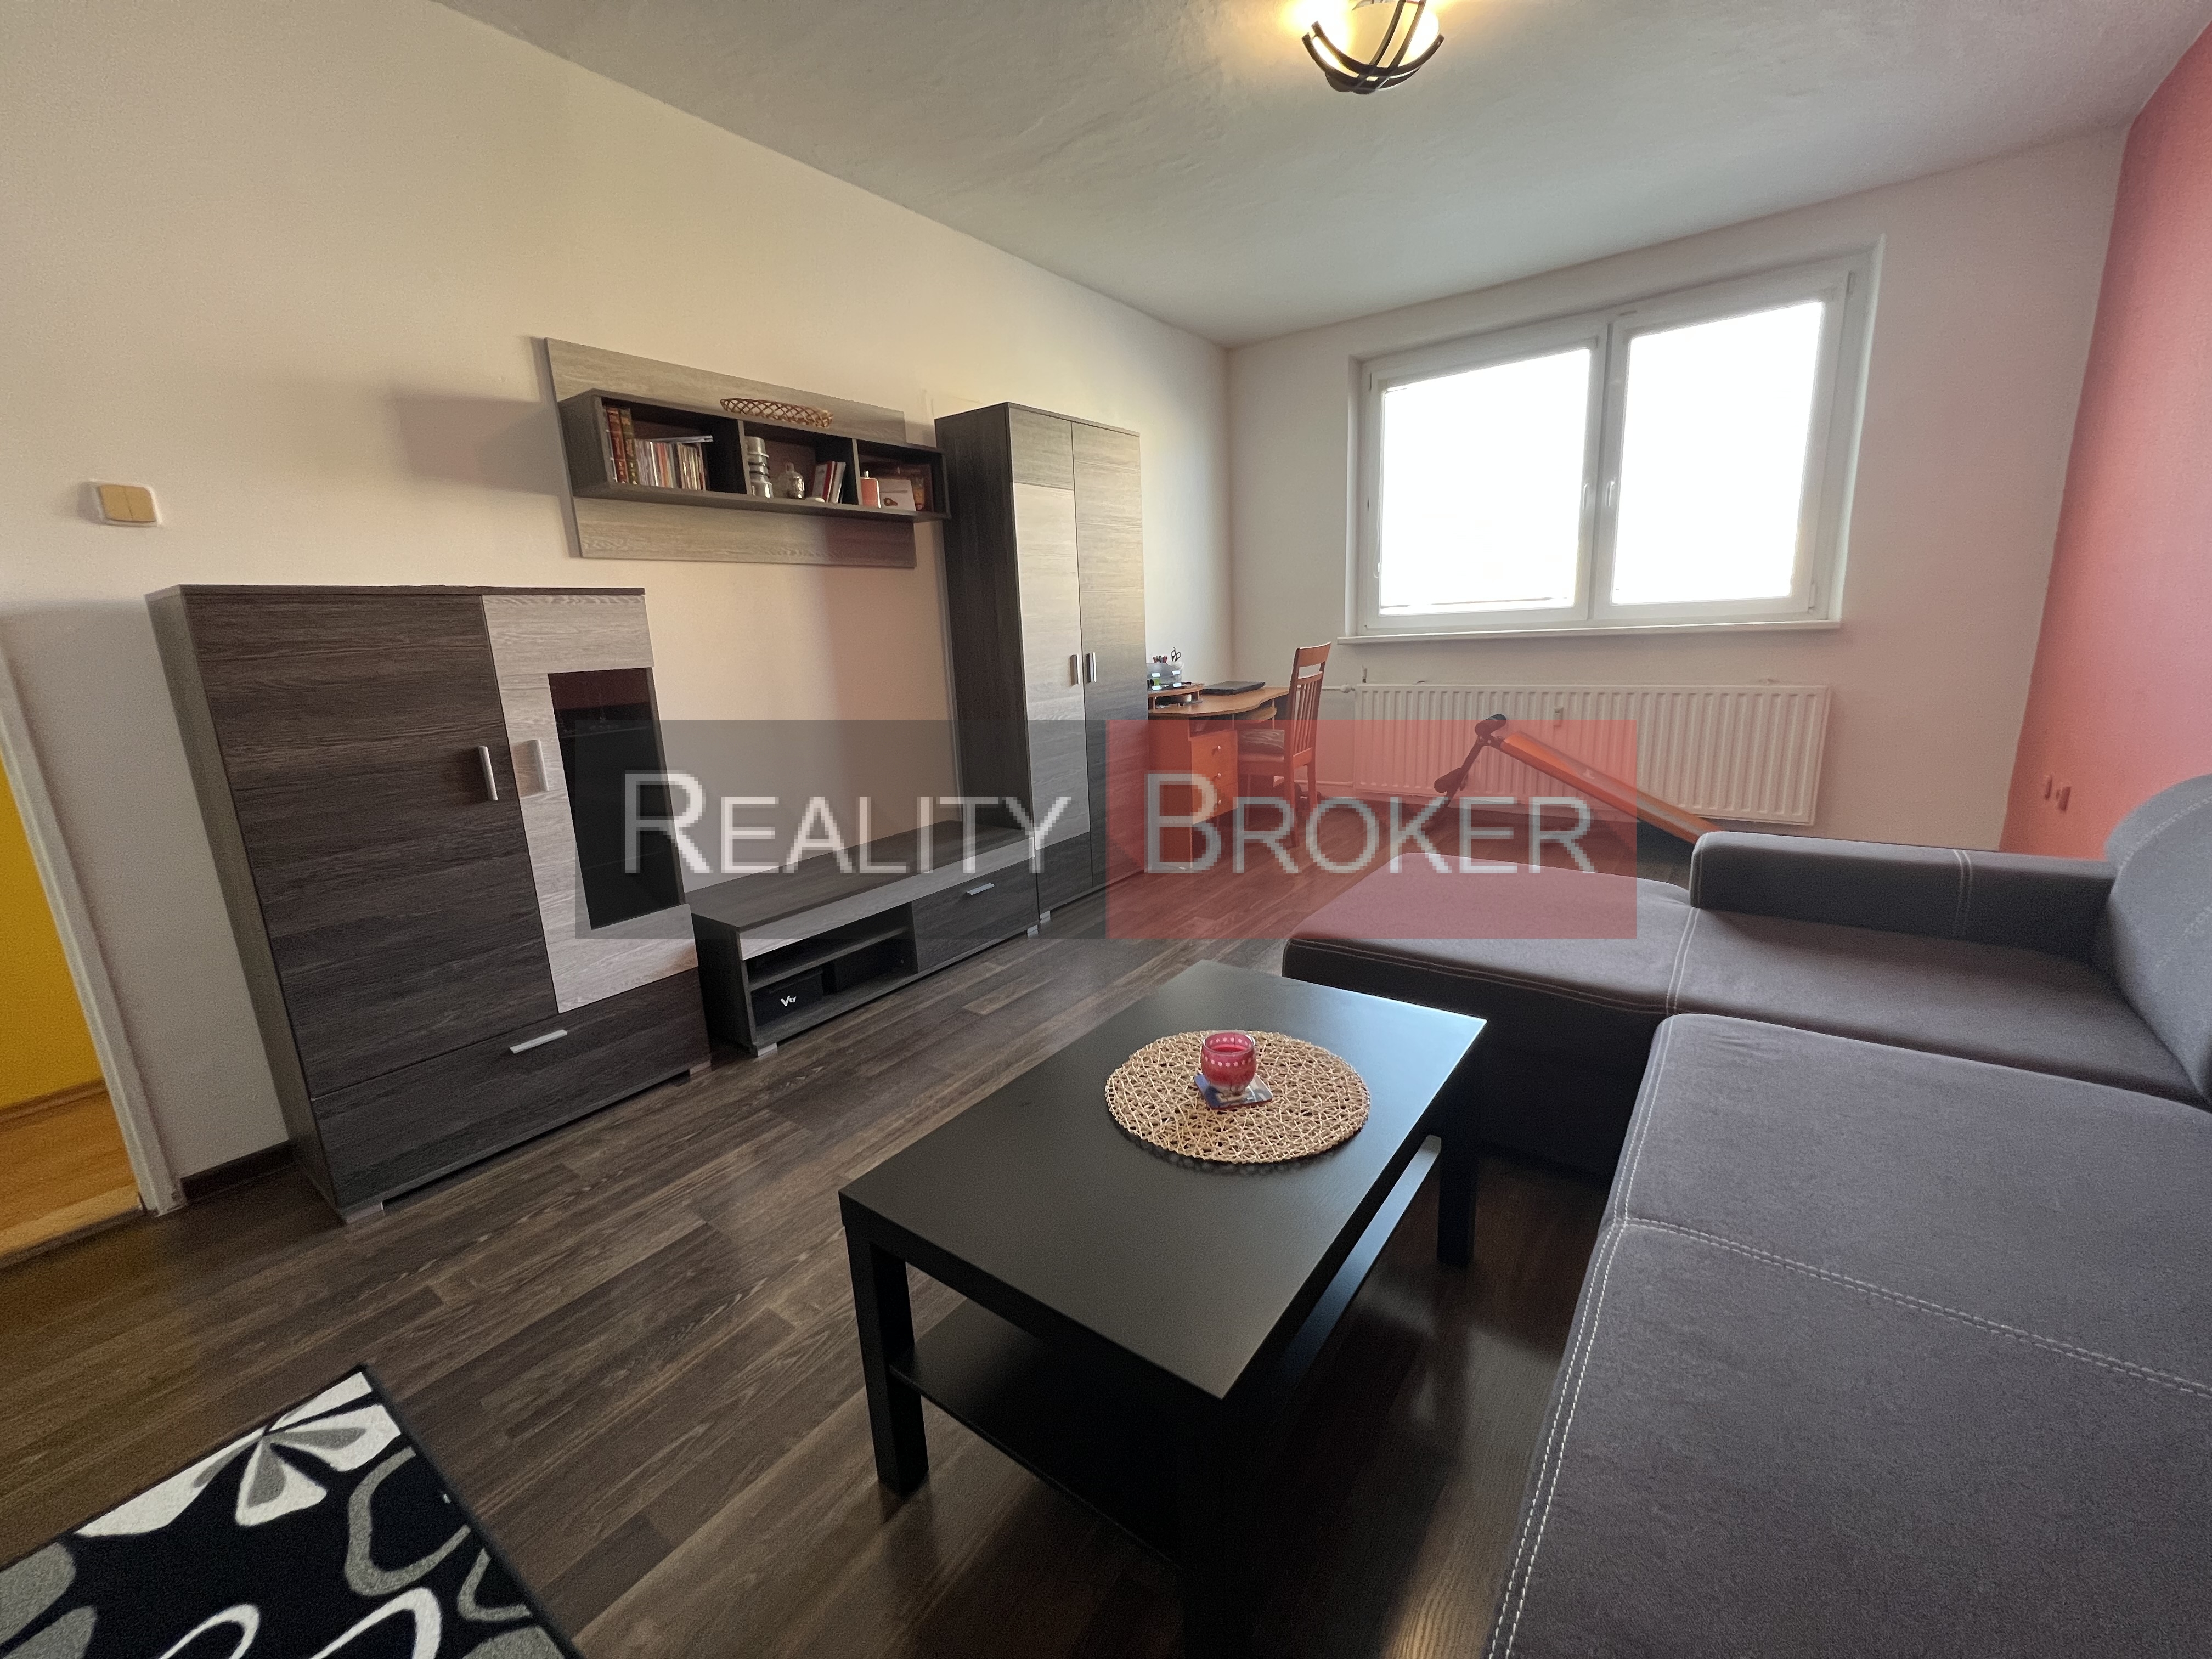 REALITY BROKER ponúka na predaj pekný priestranný 2 izb. byt v okrajovej časti mesta Senec